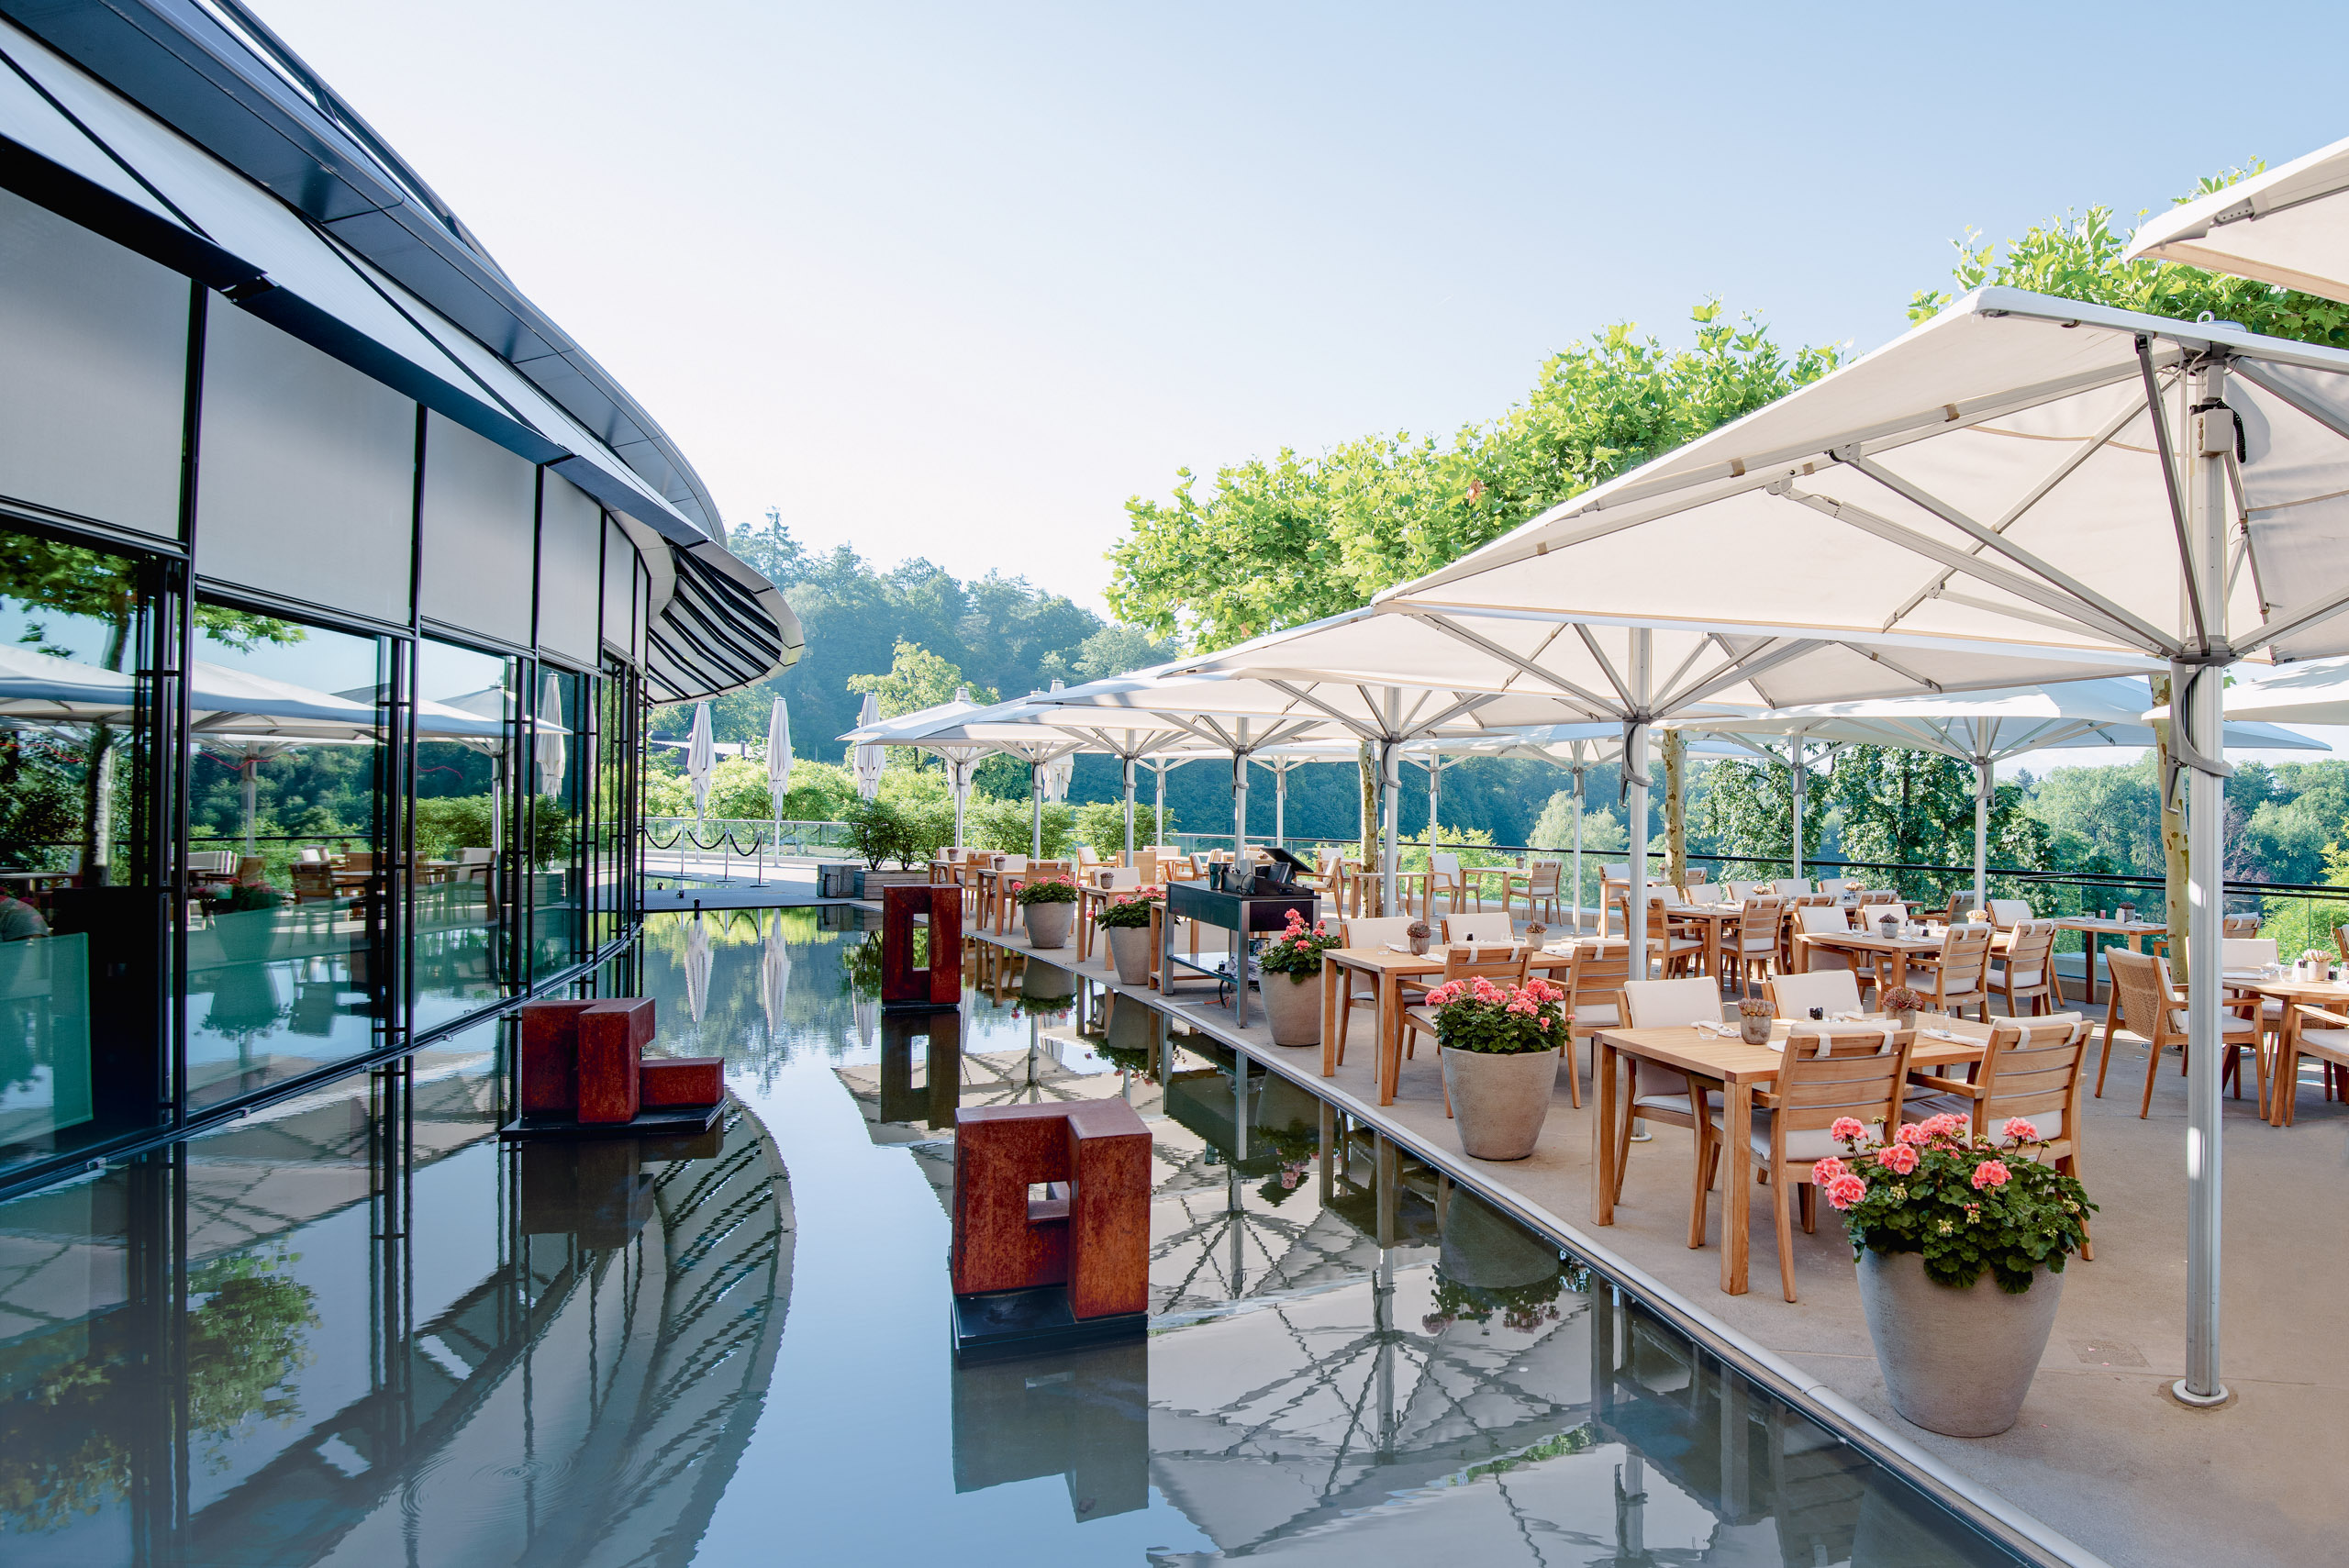 The Dolder Grand Hotel Zurich Saltz Restaurant Terrace